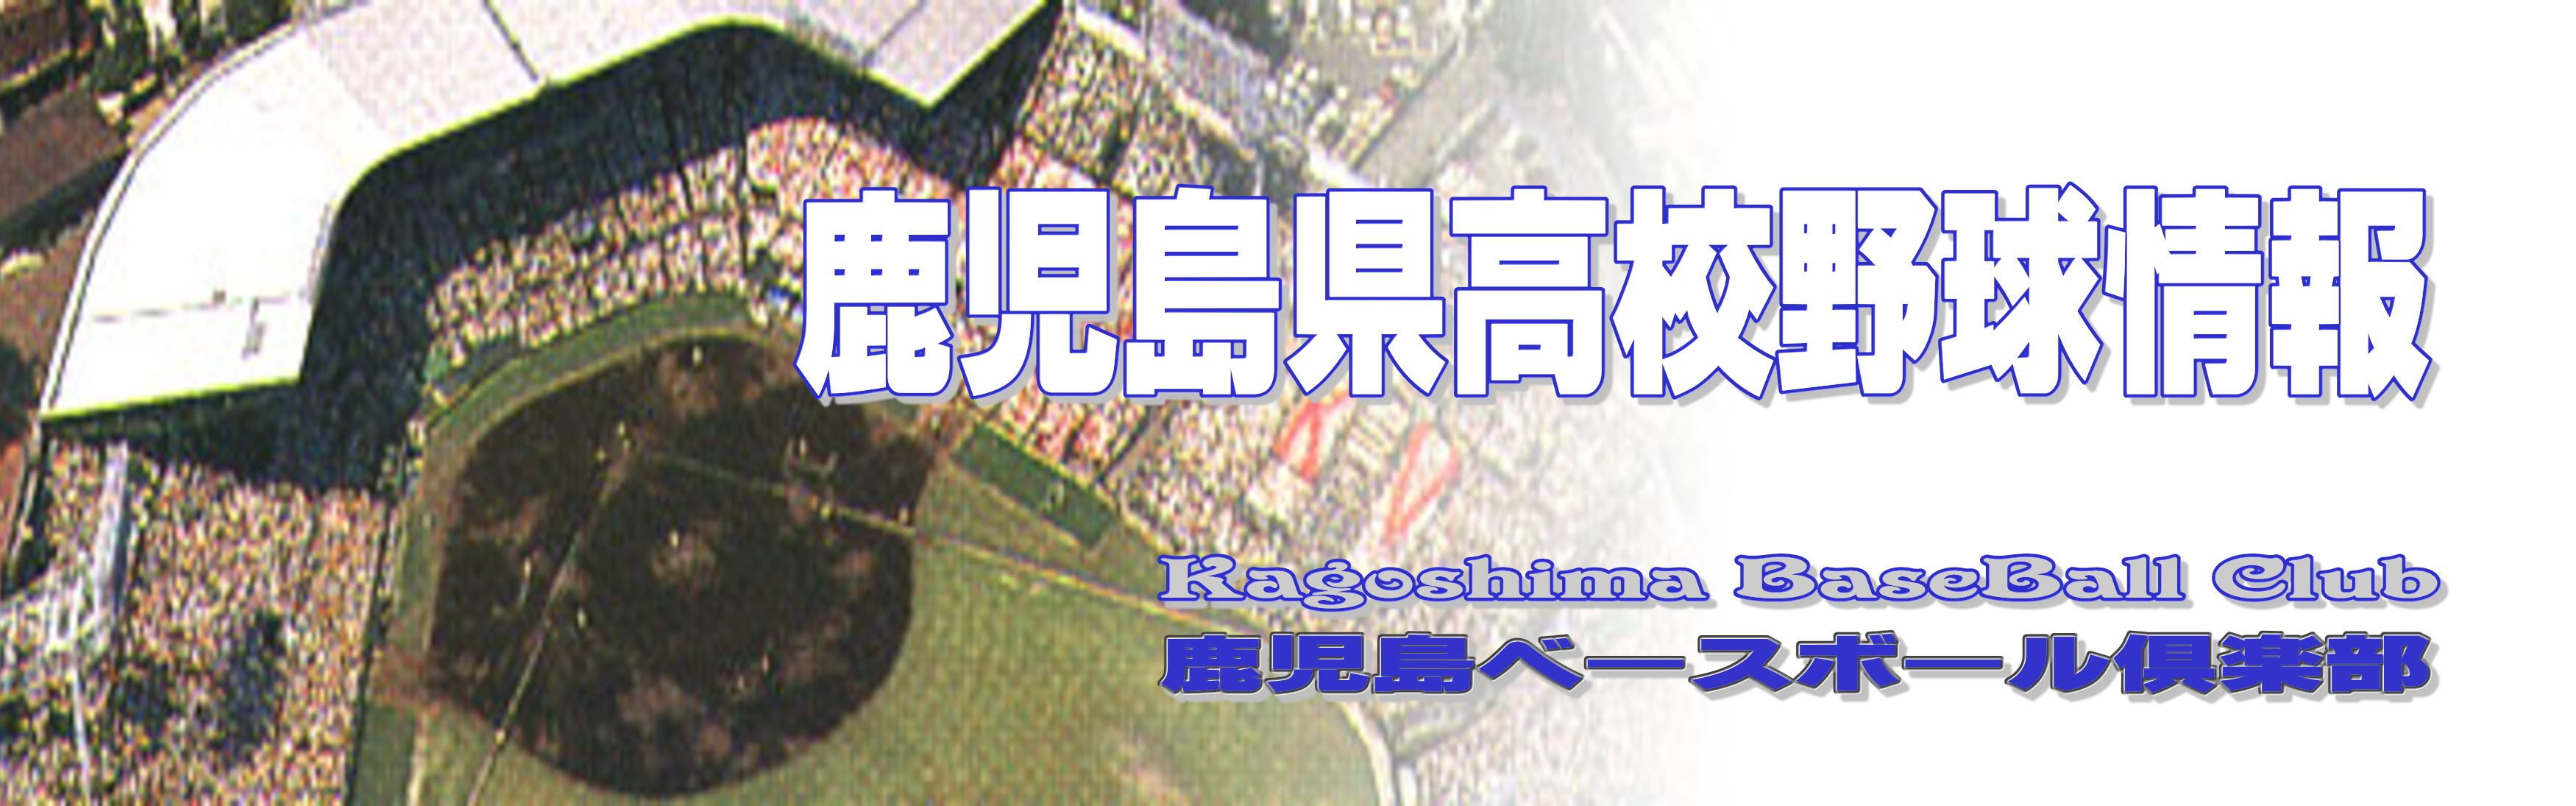 鹿児島県高校野球 楽天ブログ